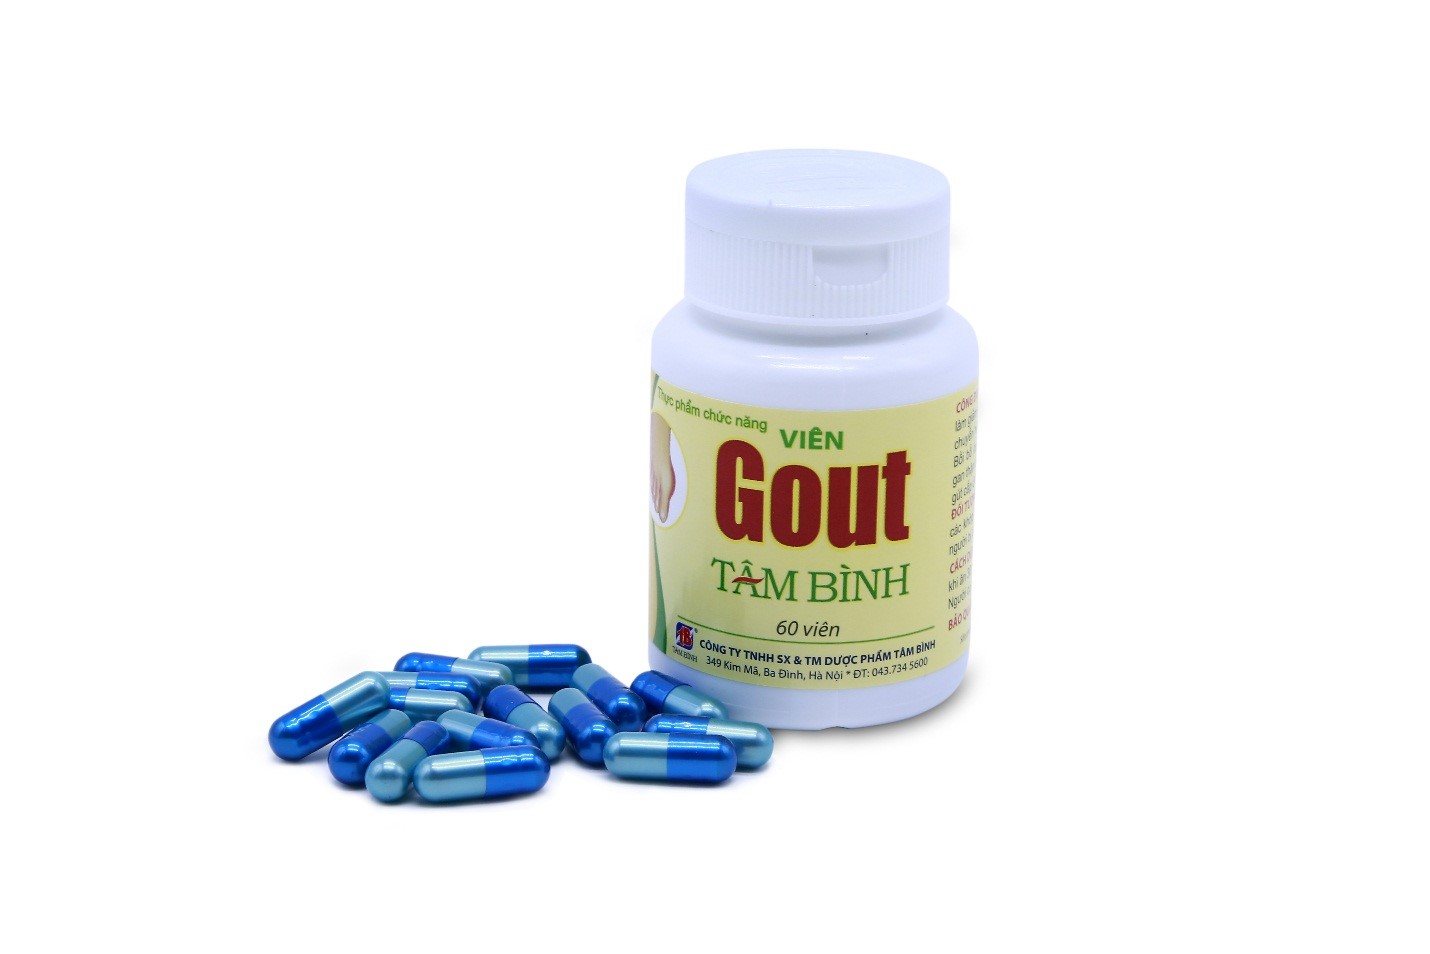 Viên gout Tâm Bình hiện là sản phẩm được đông đảo người tiêu dùng tin tưởng trong hỗ trợ điều trị bệnh gout.